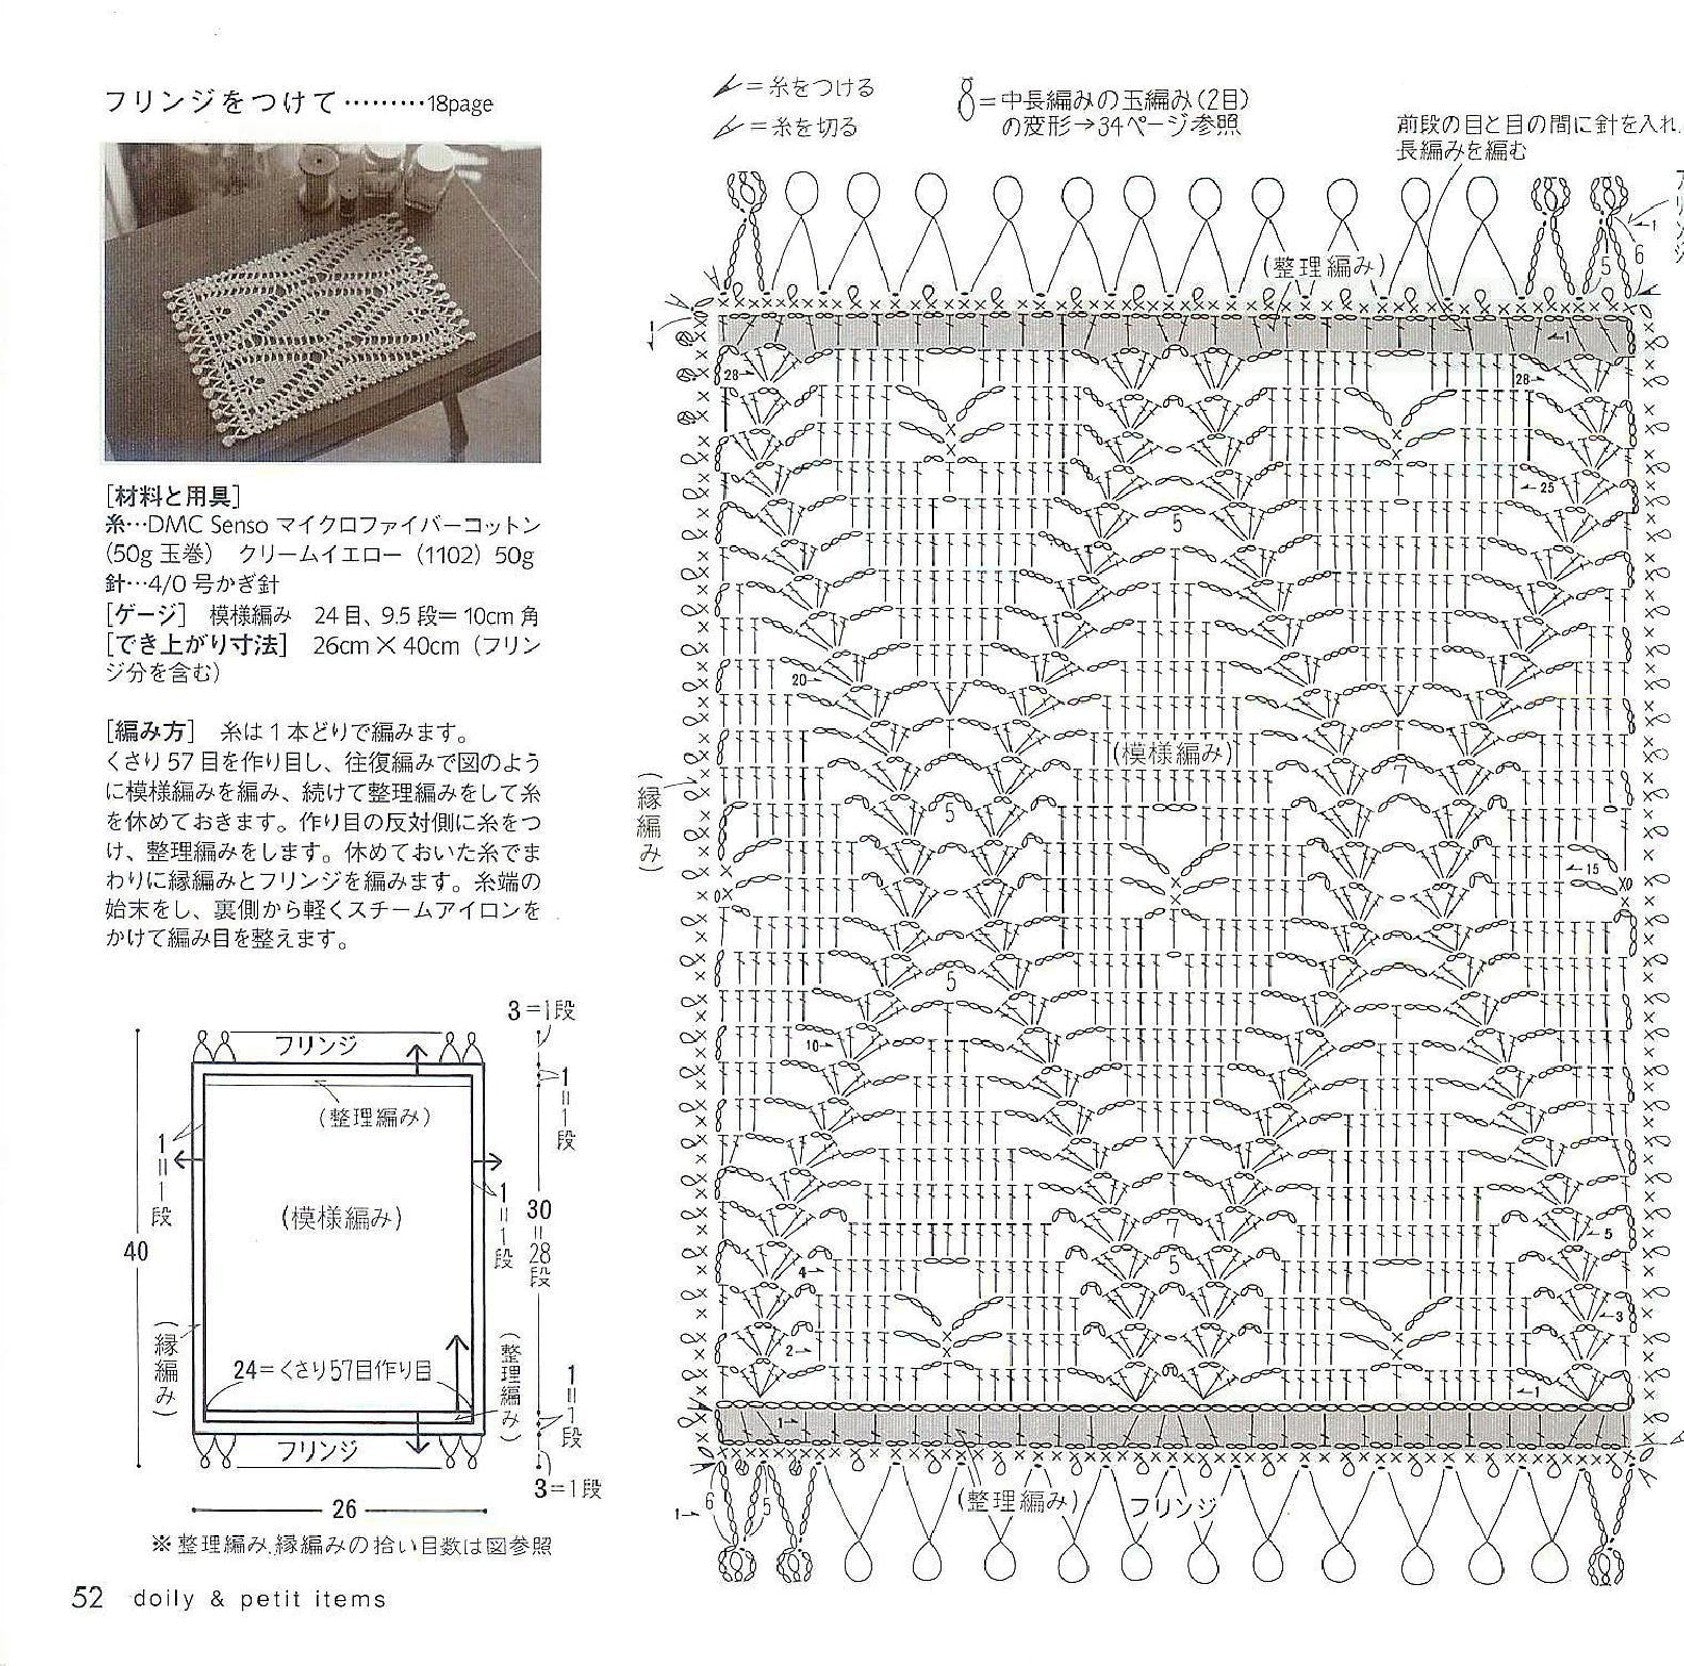 Japanese doily crochet patterns